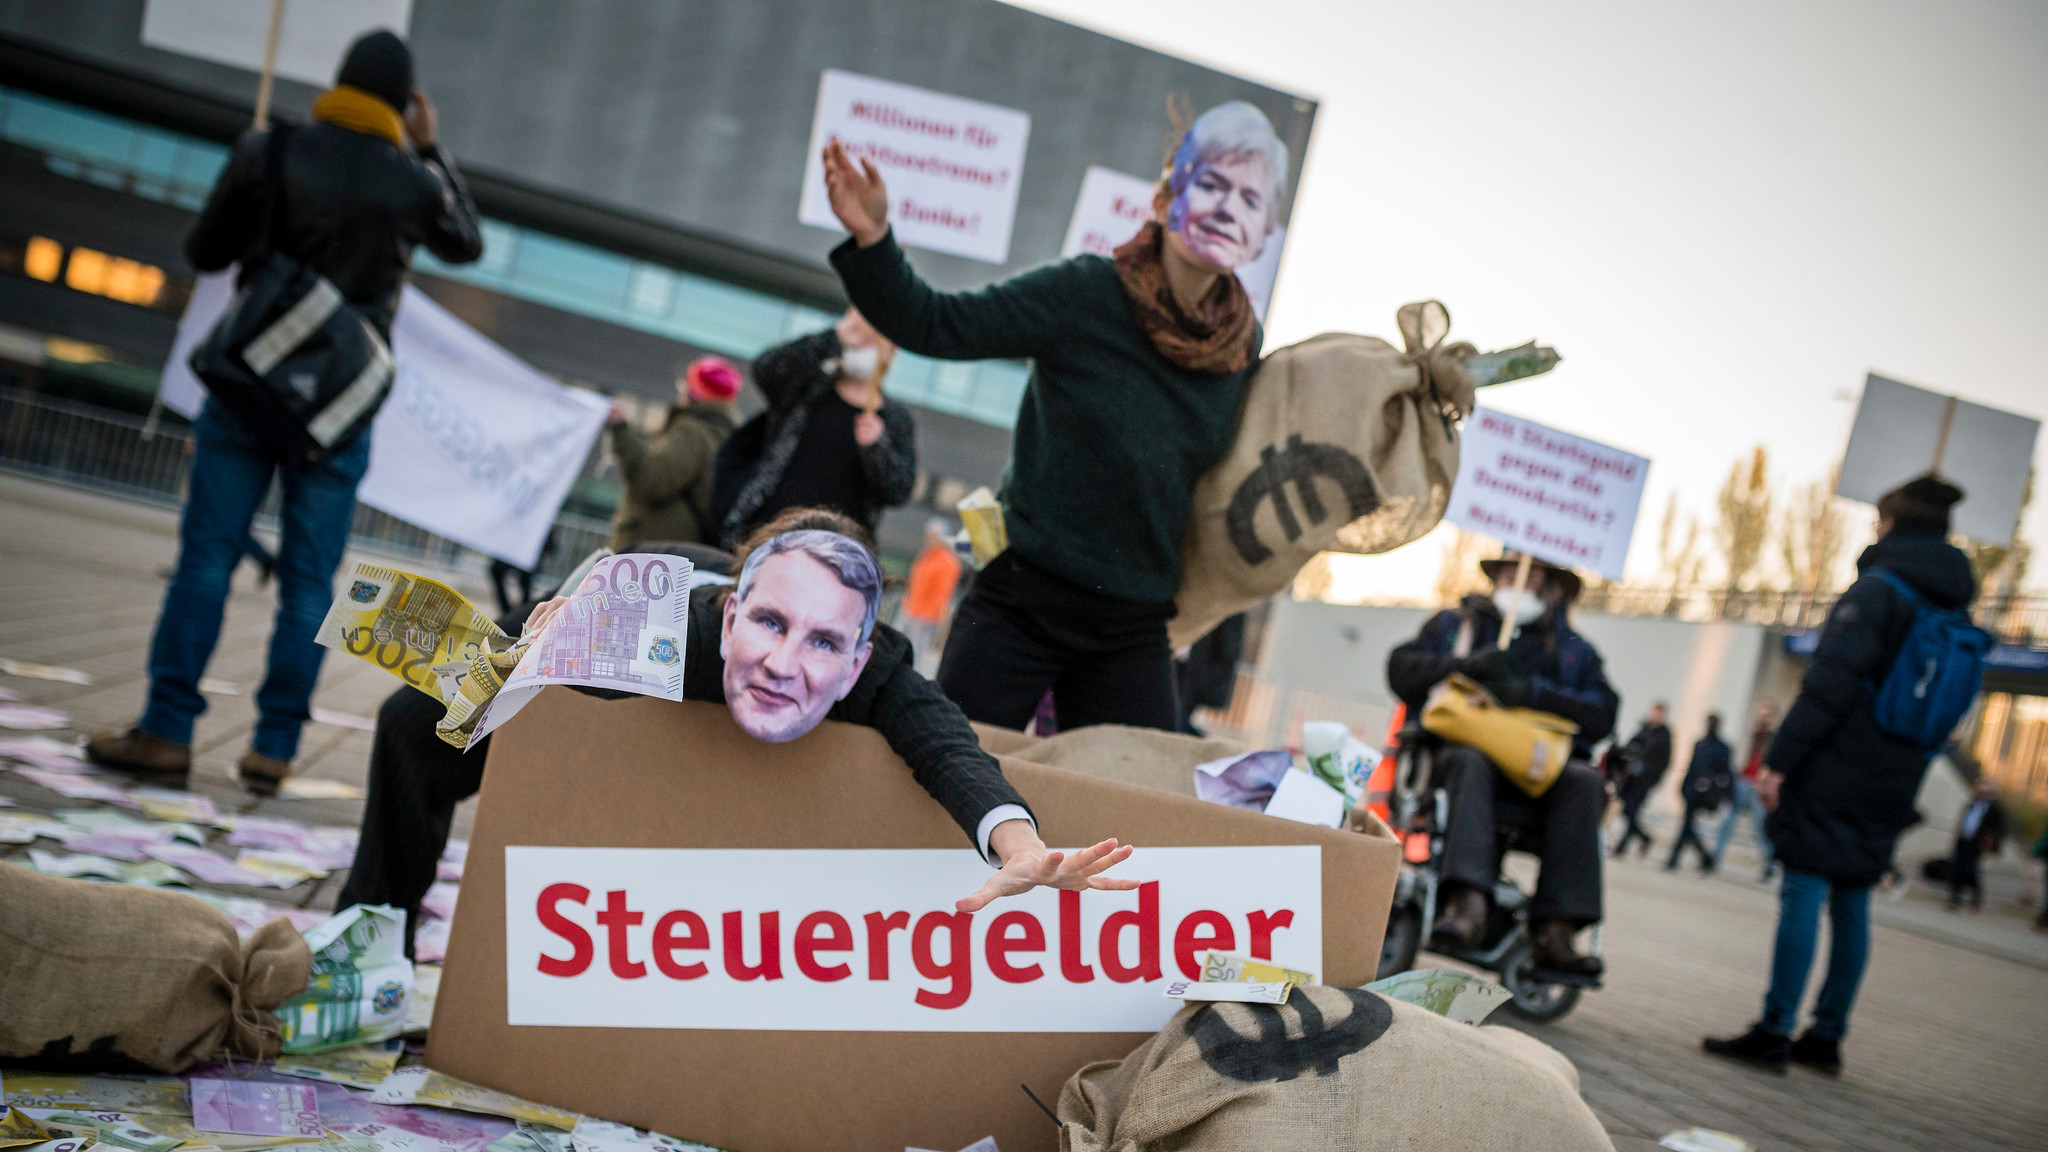 Zwei Personen mit Masken von Erika Steinbach und Björn Höcke werfen Geldscheine. Daneben sind Säcke mit einem Euro-Zeichen, sowie ein Karton auf dem "Steuergelder" steht.